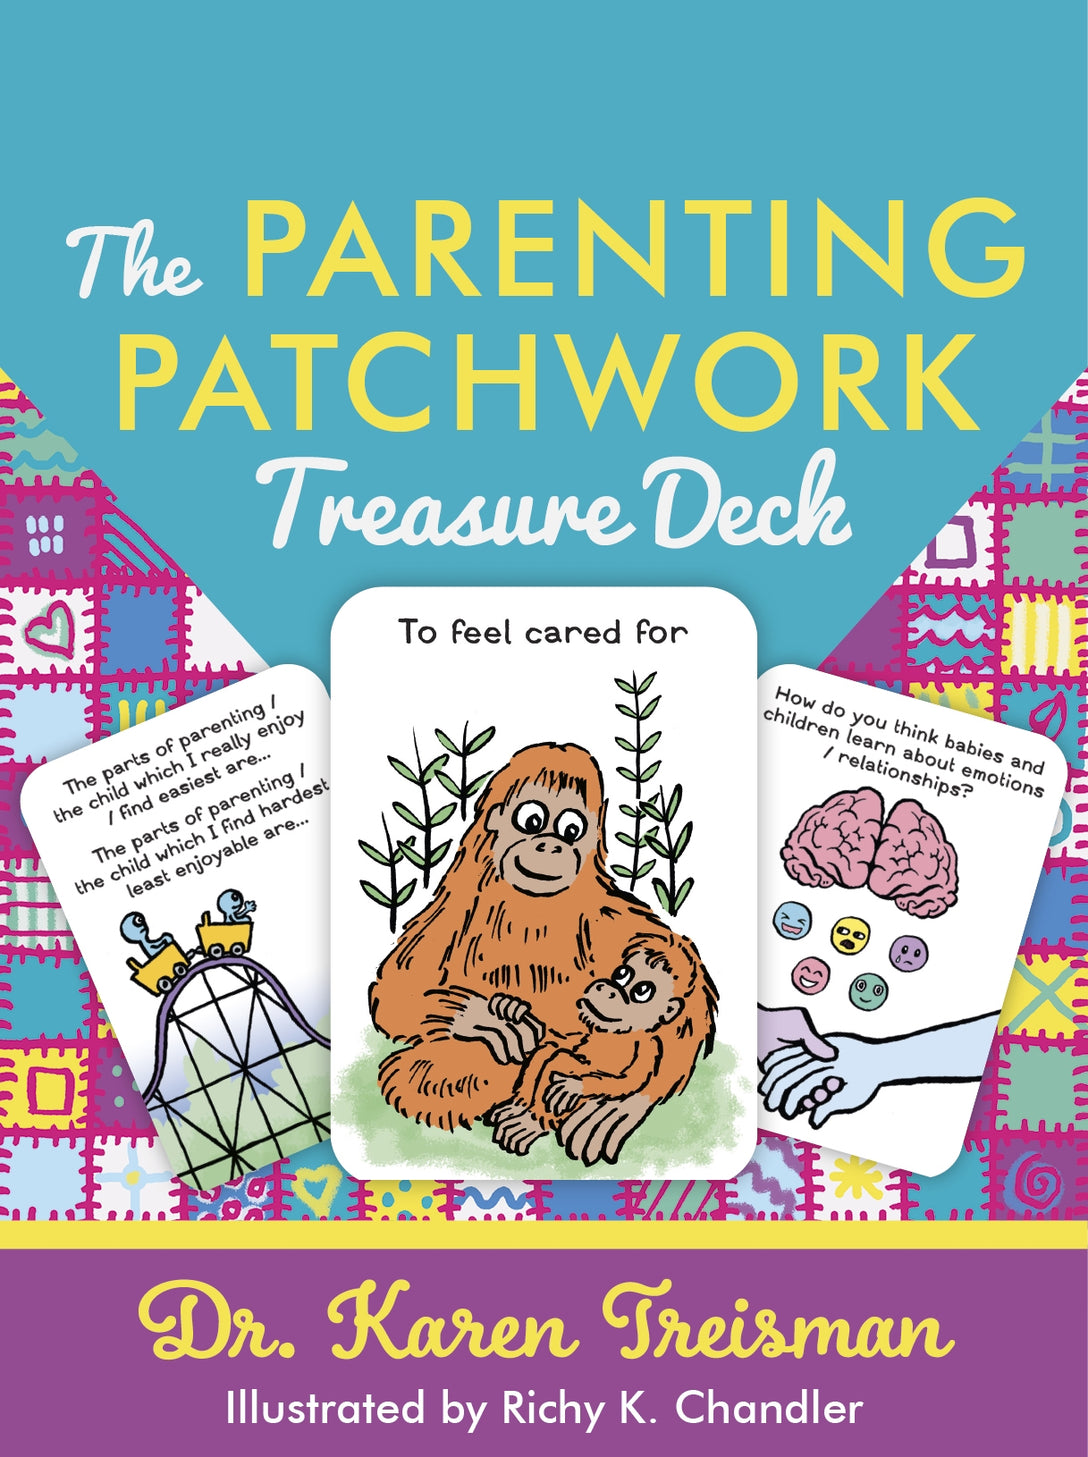 The Parenting Patchwork Treasure Deck by Richy K. Chandler, Karen Treisman